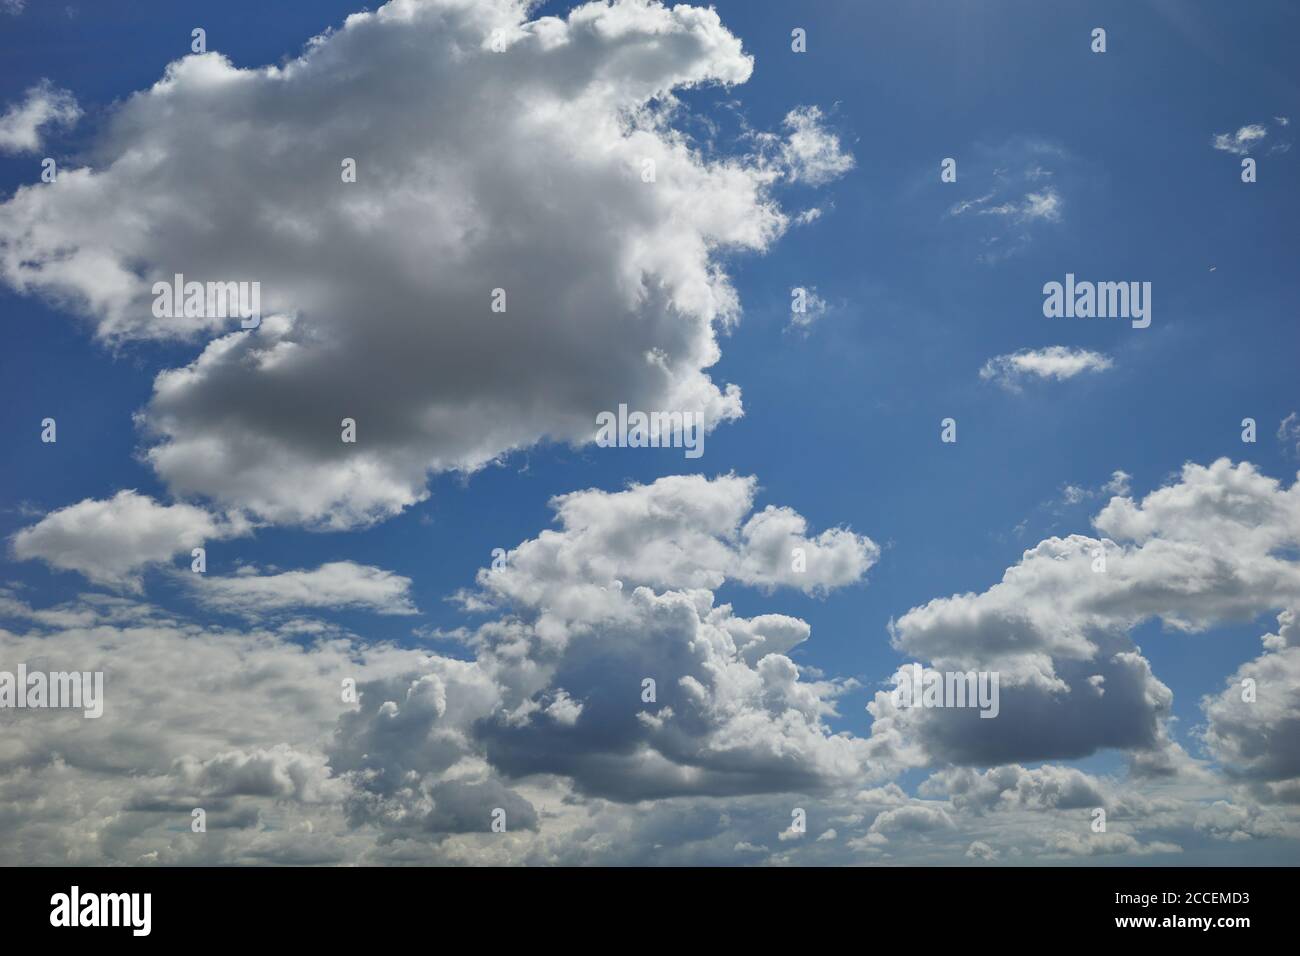 Entzückende Wolken fliegen am blauen Himmel. Regenwolkenbildung am blauen Himmel. Hintergrund für Vorhersage und Meteorologie Illustration Stockfoto